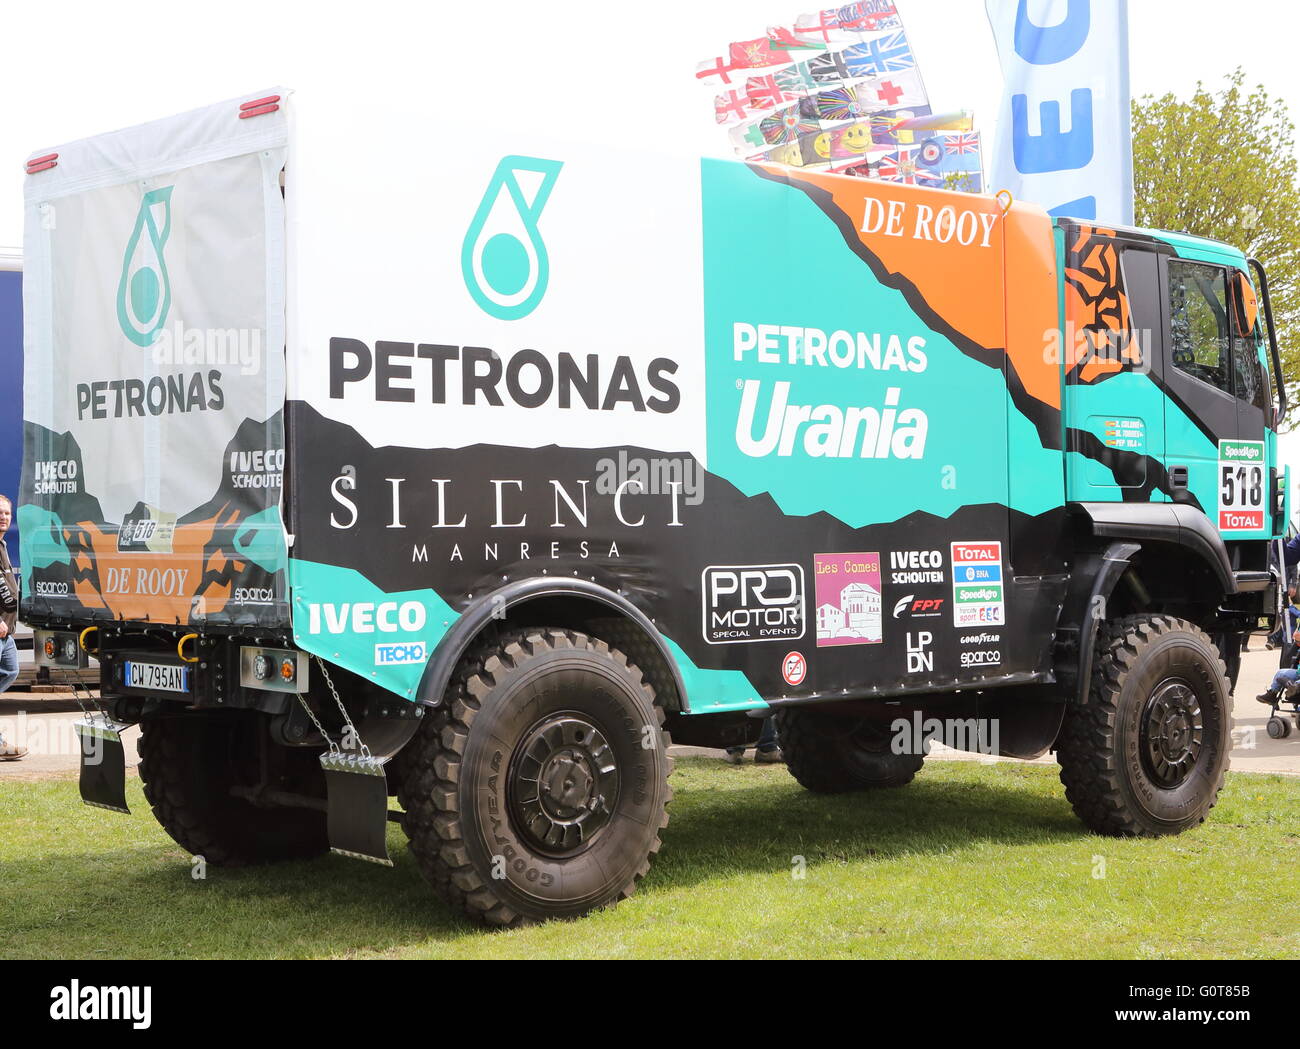 Camion Iveco HGV Petronas Urania Foto Stock